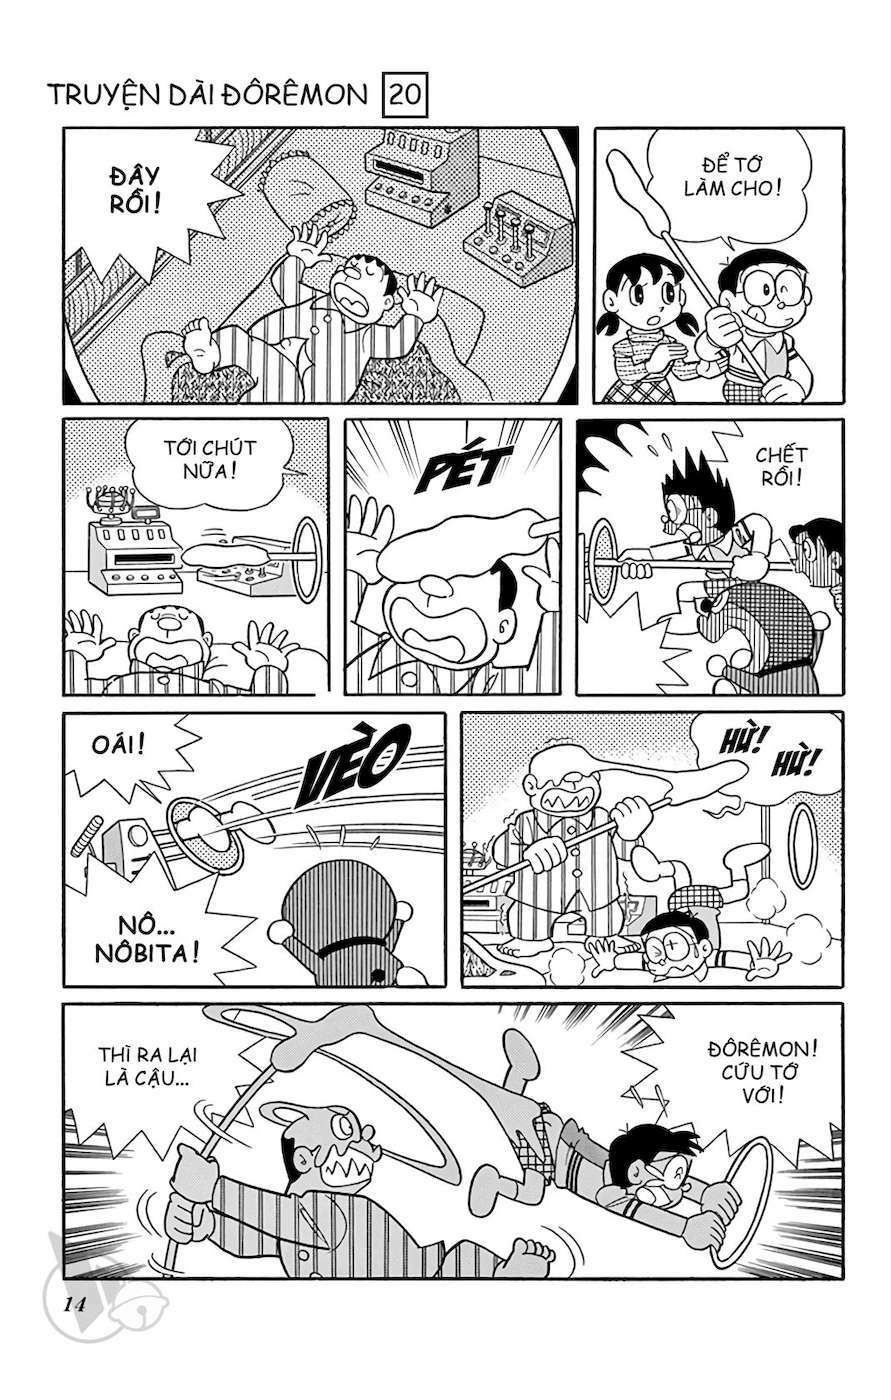 Truyện Tranh Doraemon: Truyền Thuyết Về Vua Mặt Trời Nôbita trang 13